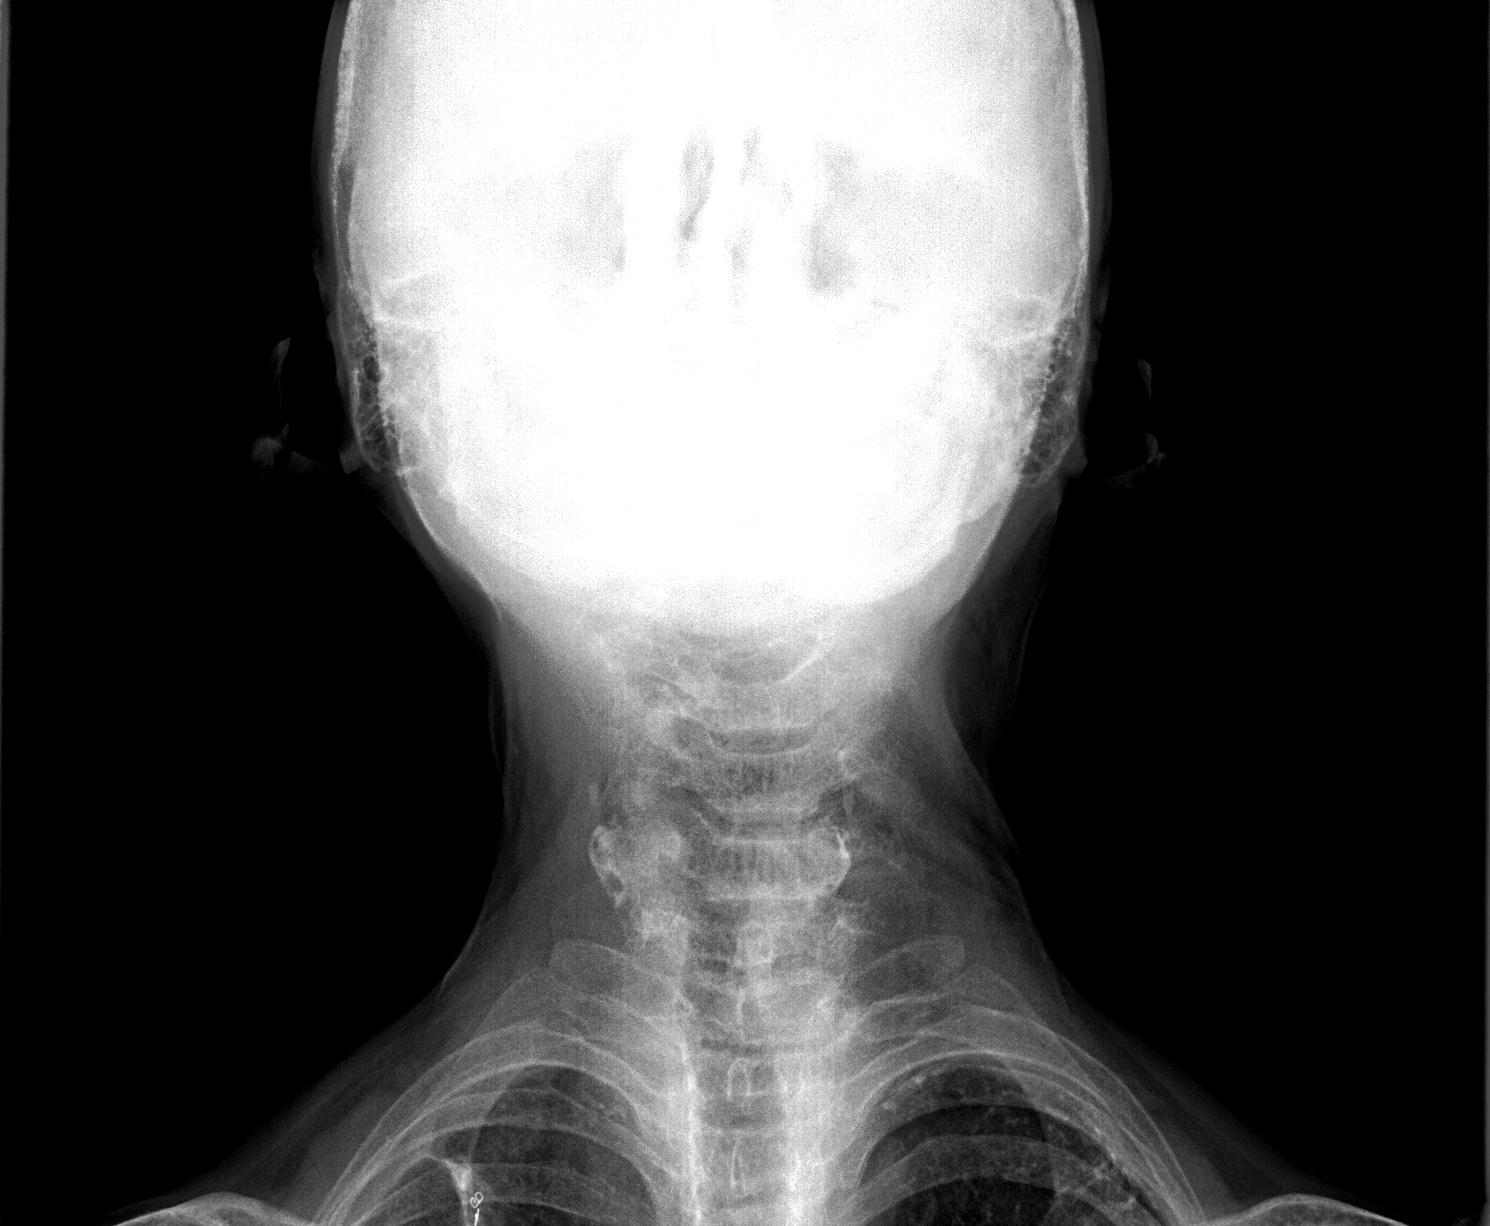 Обызвествление щитовидного хряща на рентгене